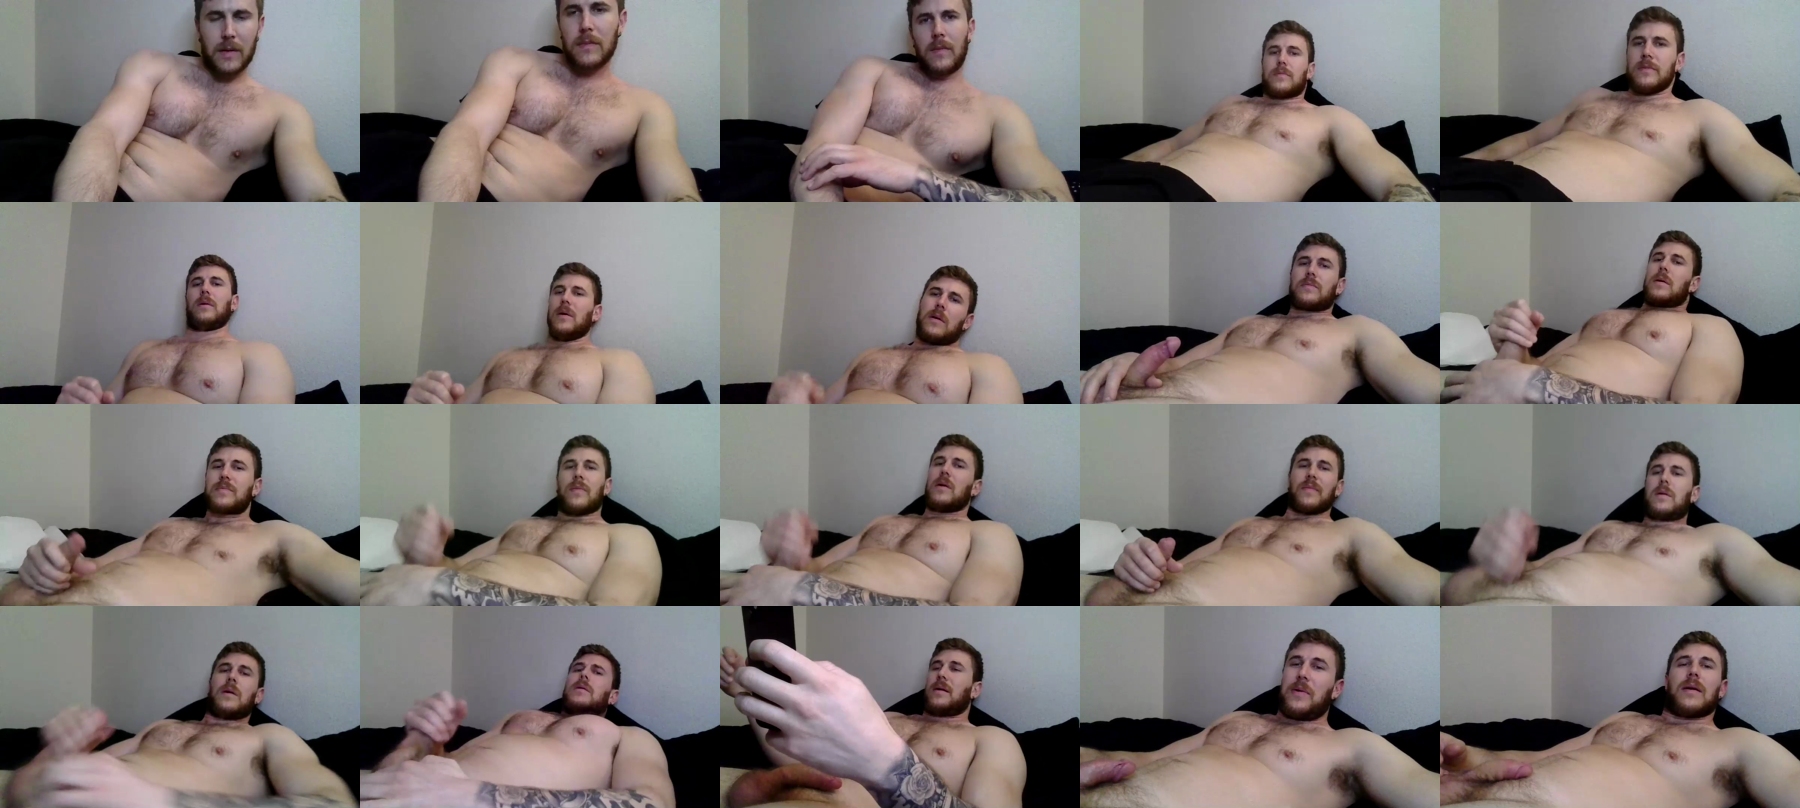 Mac_Drew  04-11-2021 Male Naked